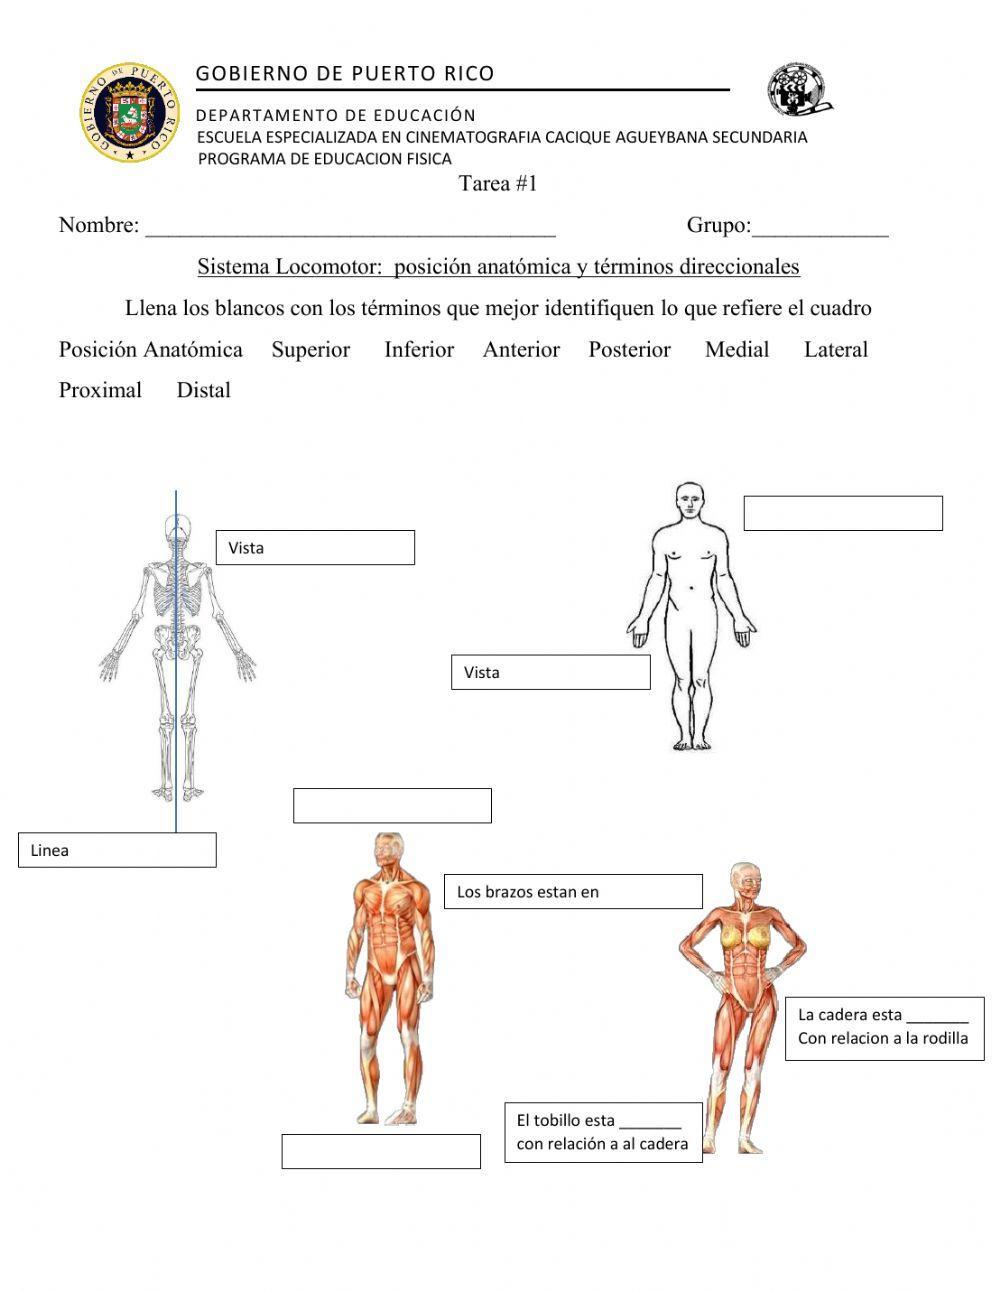 Posicion anatomica y Terminos direccionales